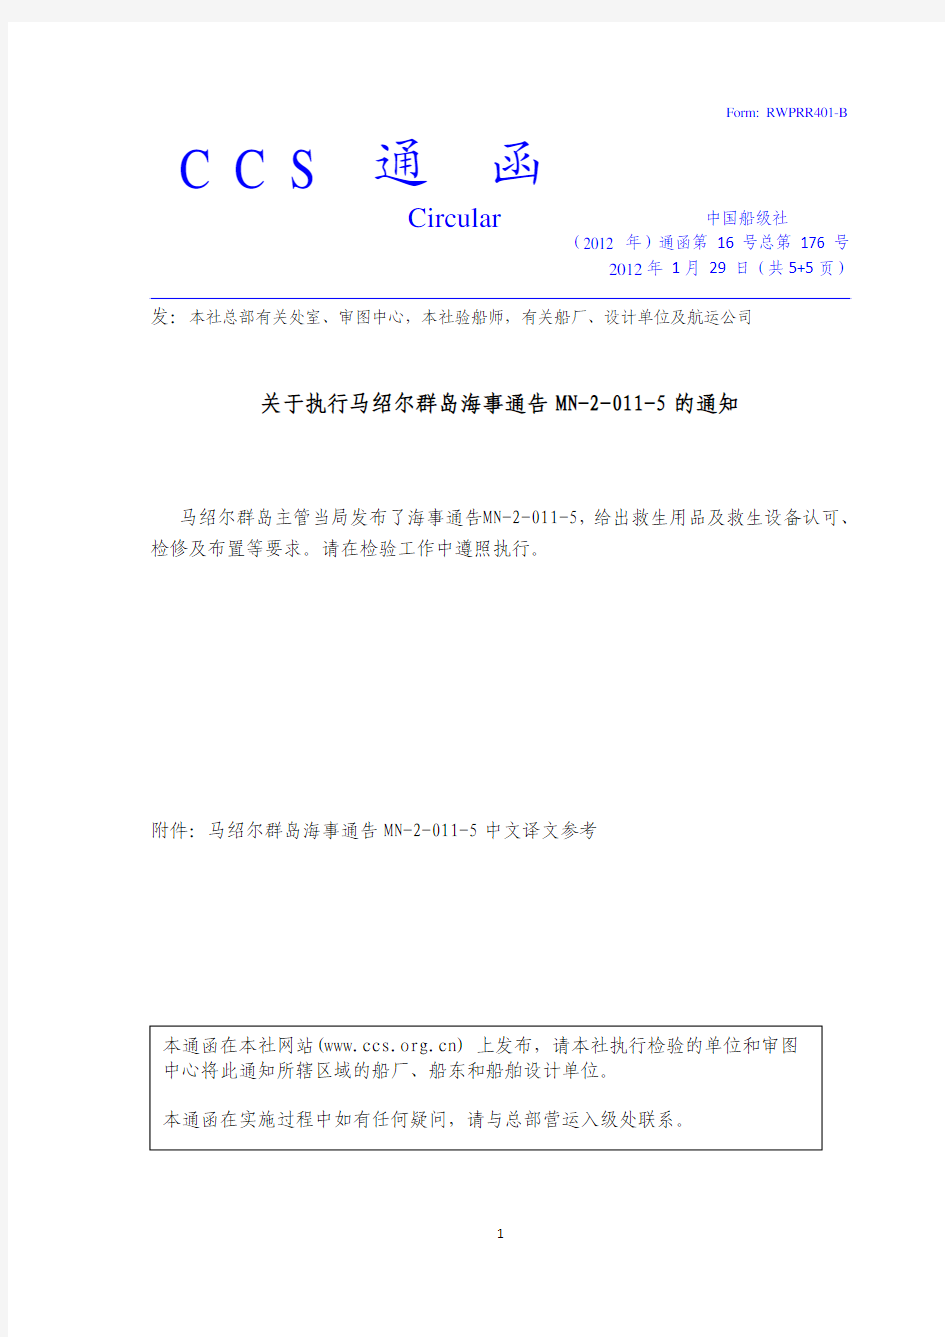 中国船级社(2012年)通函第14号总第176号-关于执行马绍尔群岛海事通告MN-2-011-5的通知cn